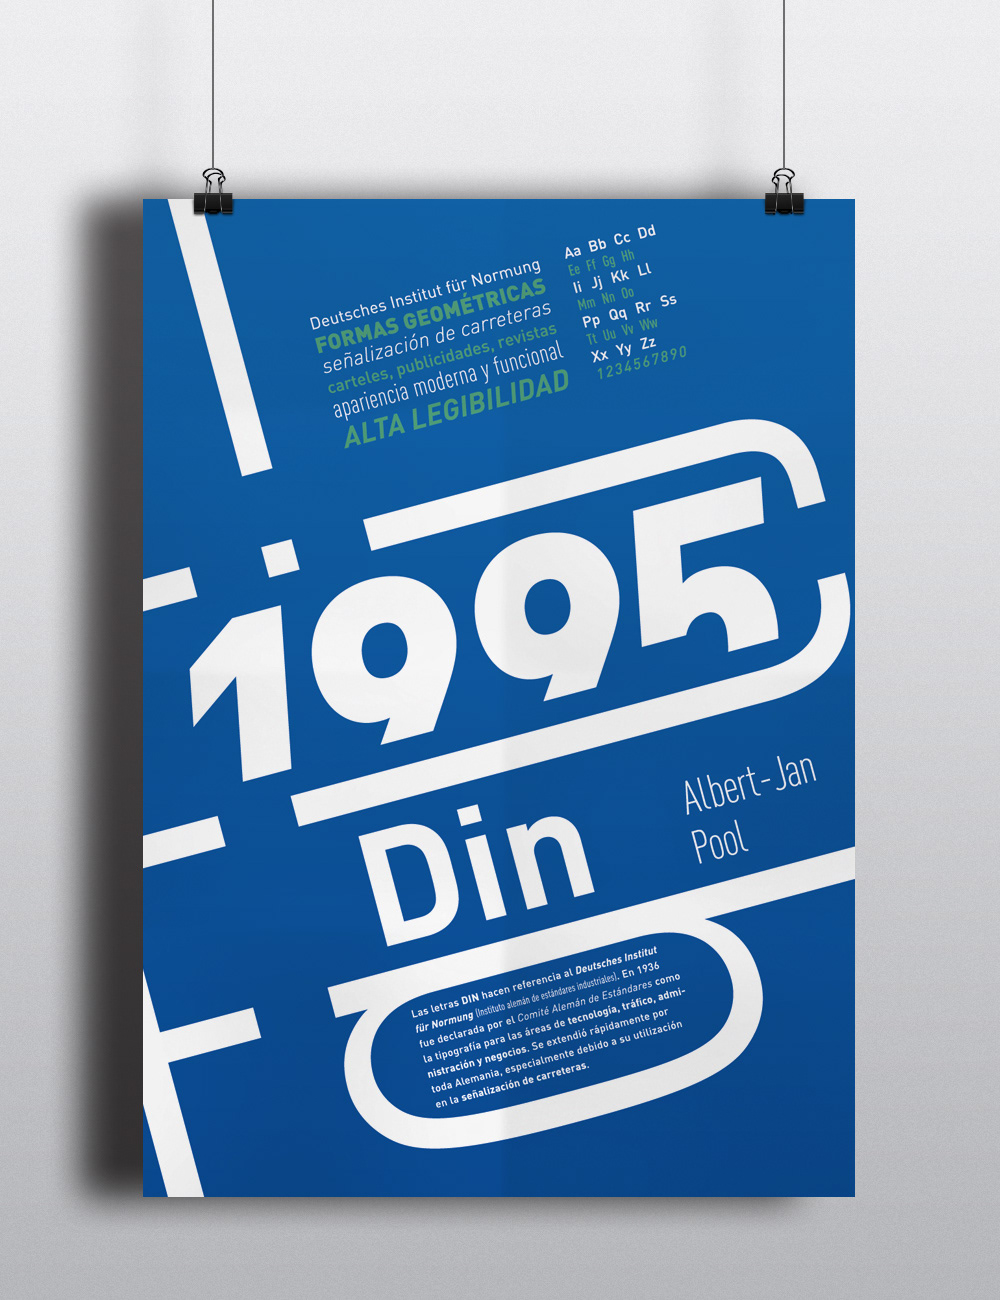 fundacion gutenberg  Silvina Subotich din tipografia afiche folleto diptico poster Albert-Jan Pool brochure